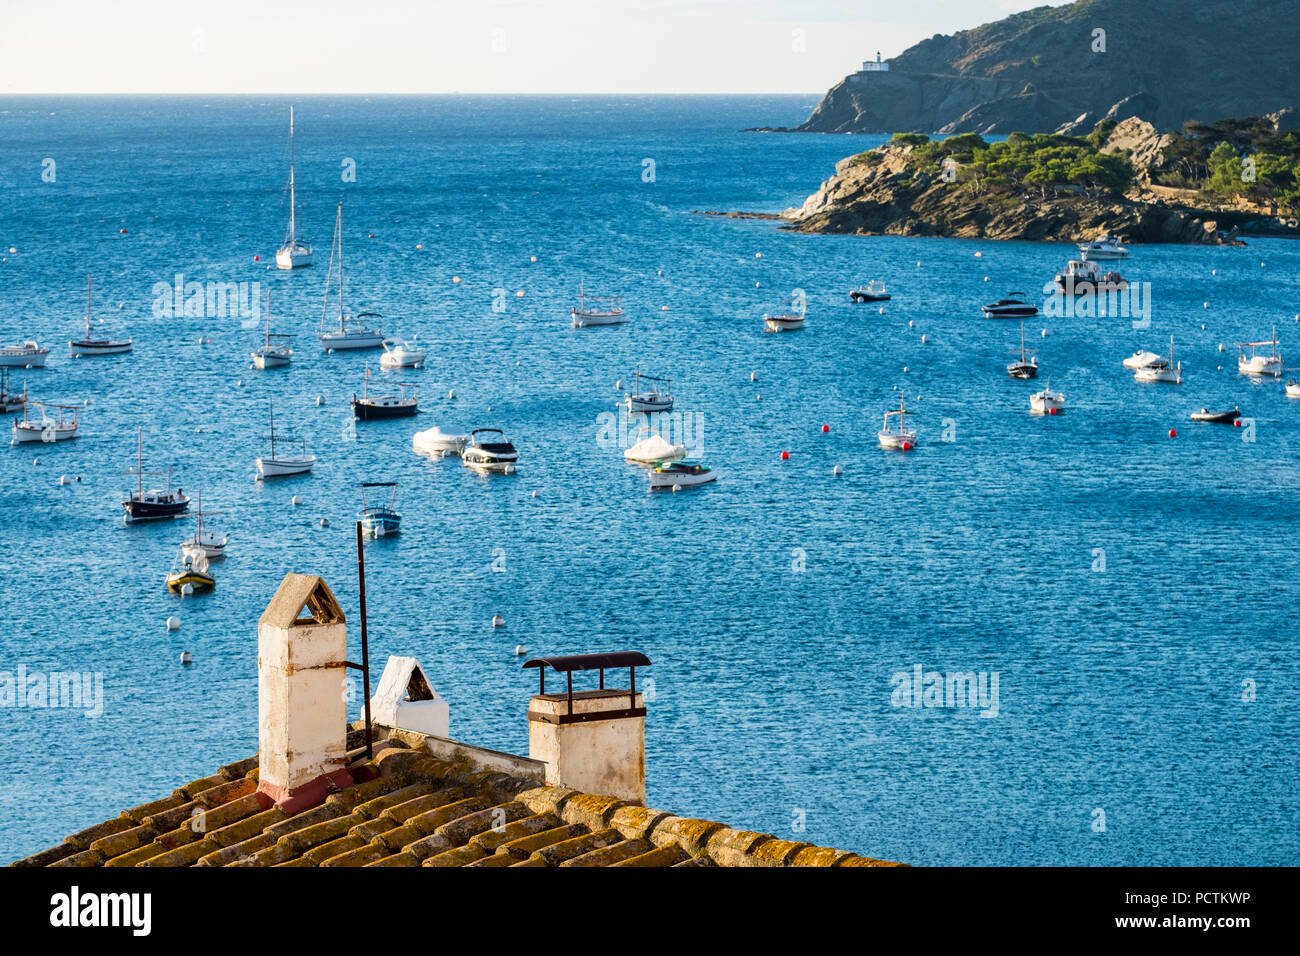 Il villaggio di pescatori di Cadaques è una delle principali destinazioni turistiche della Costa Brava nella provincia di Gerona in Catalogna Spagna Foto Stock